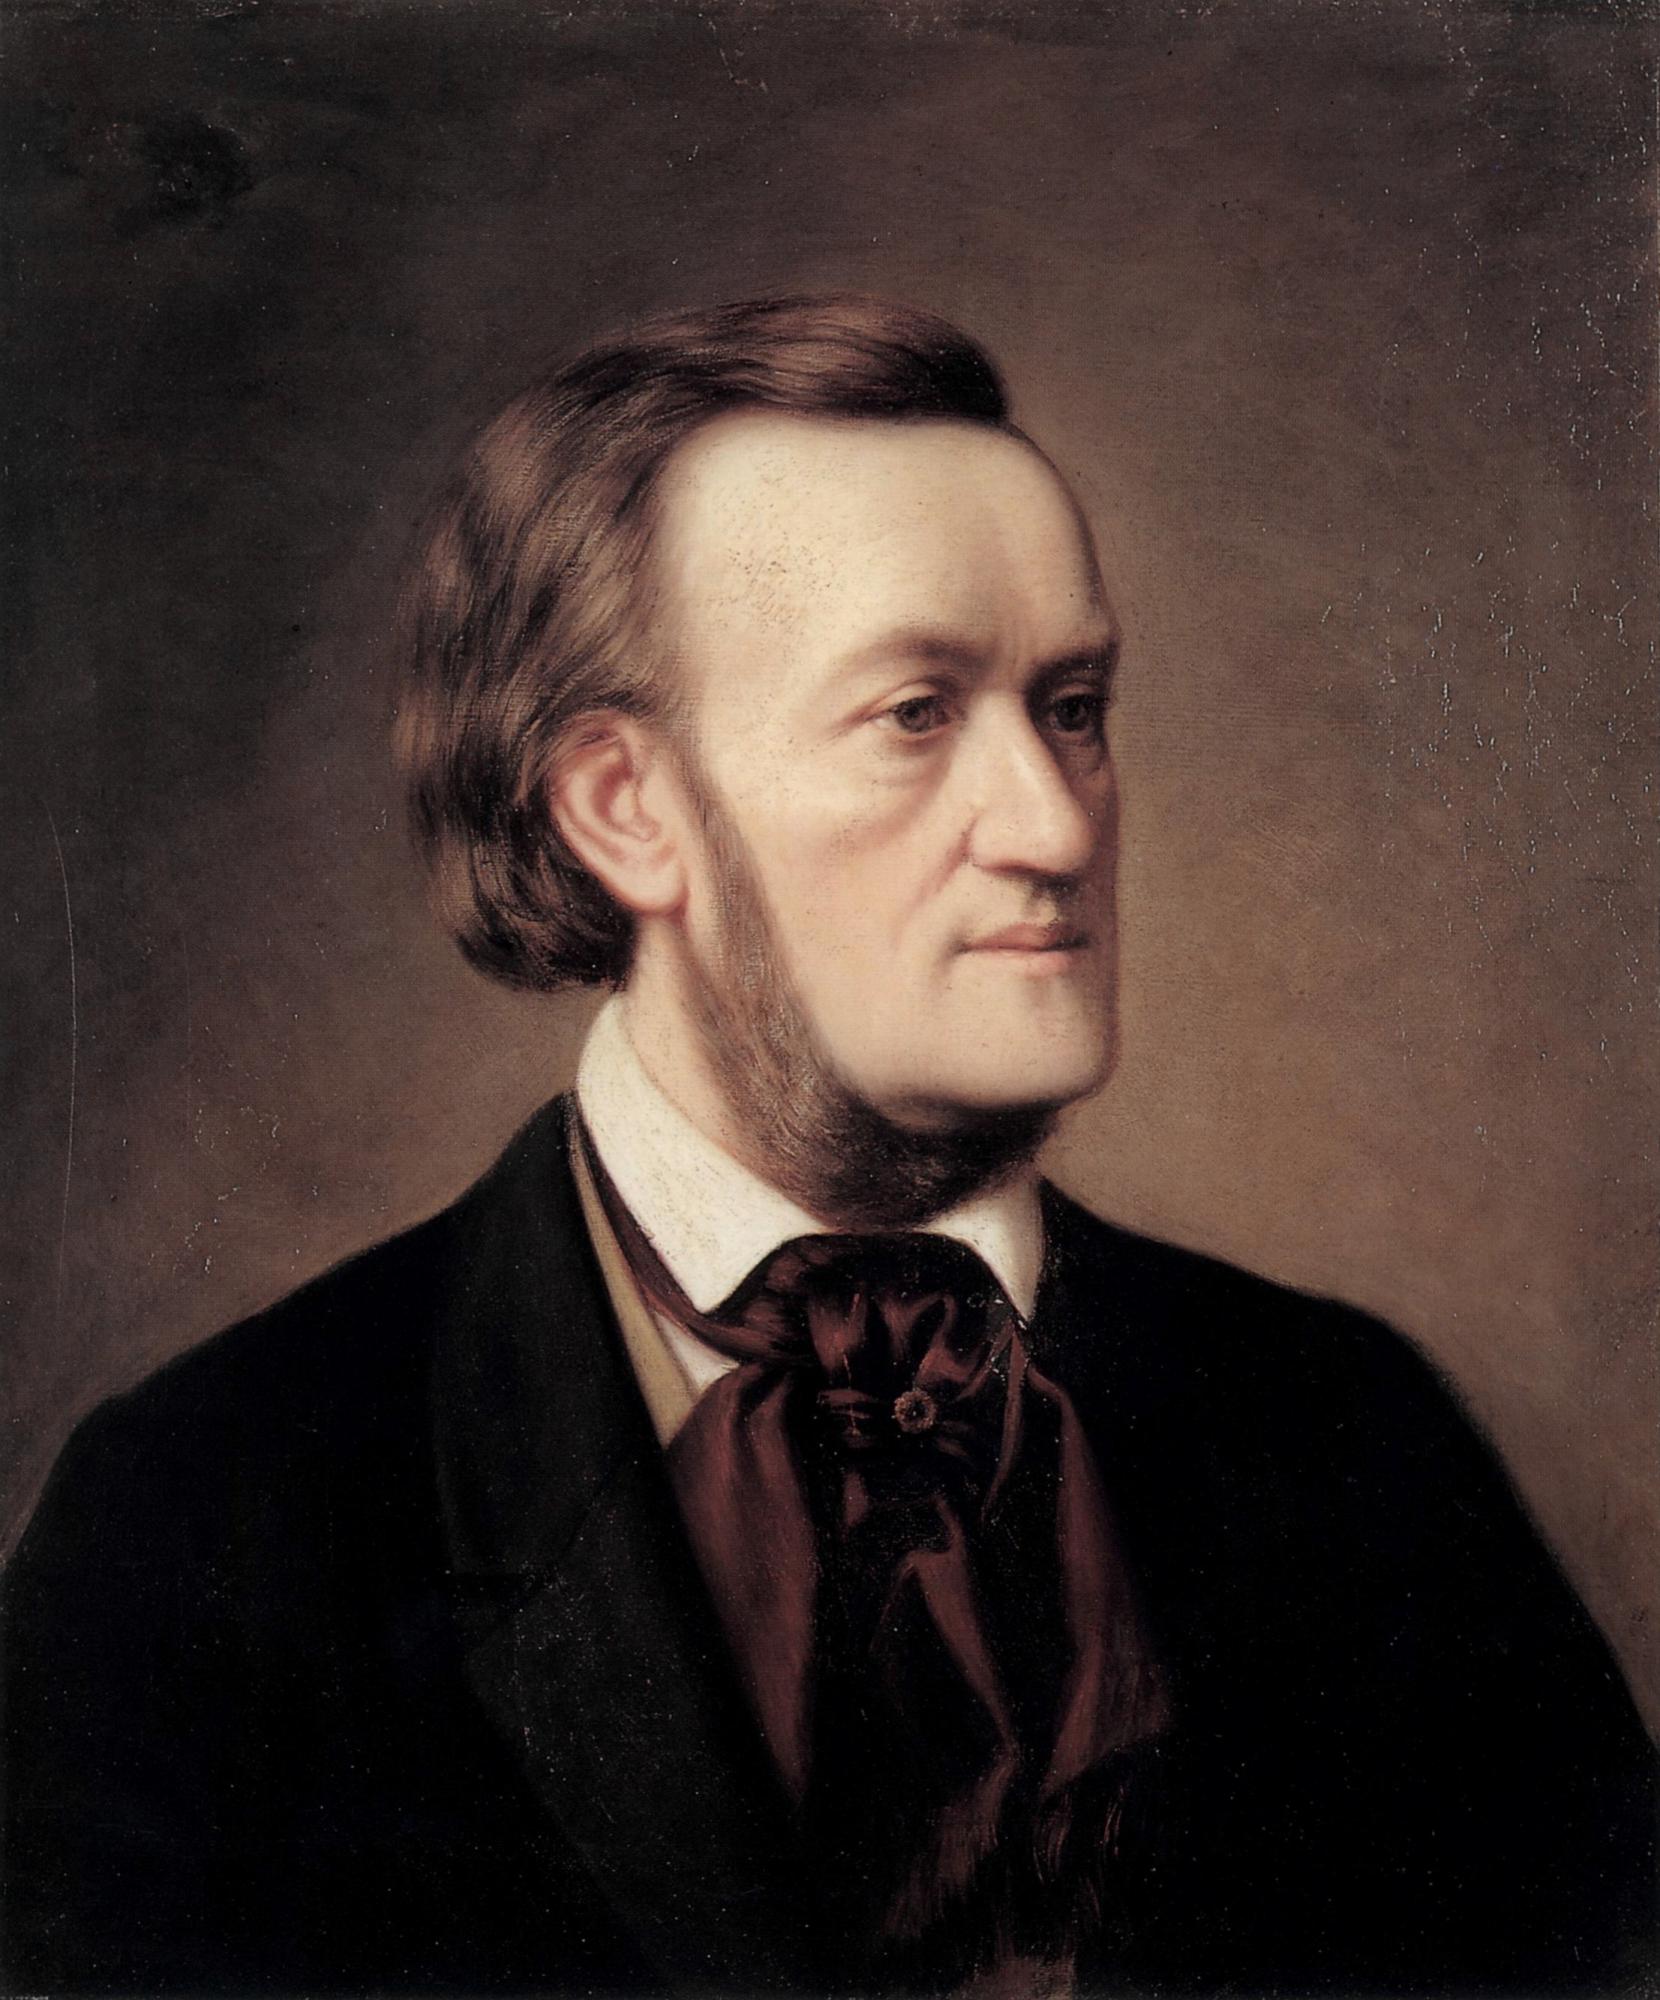 Wagner op een schilderij uit 1862.